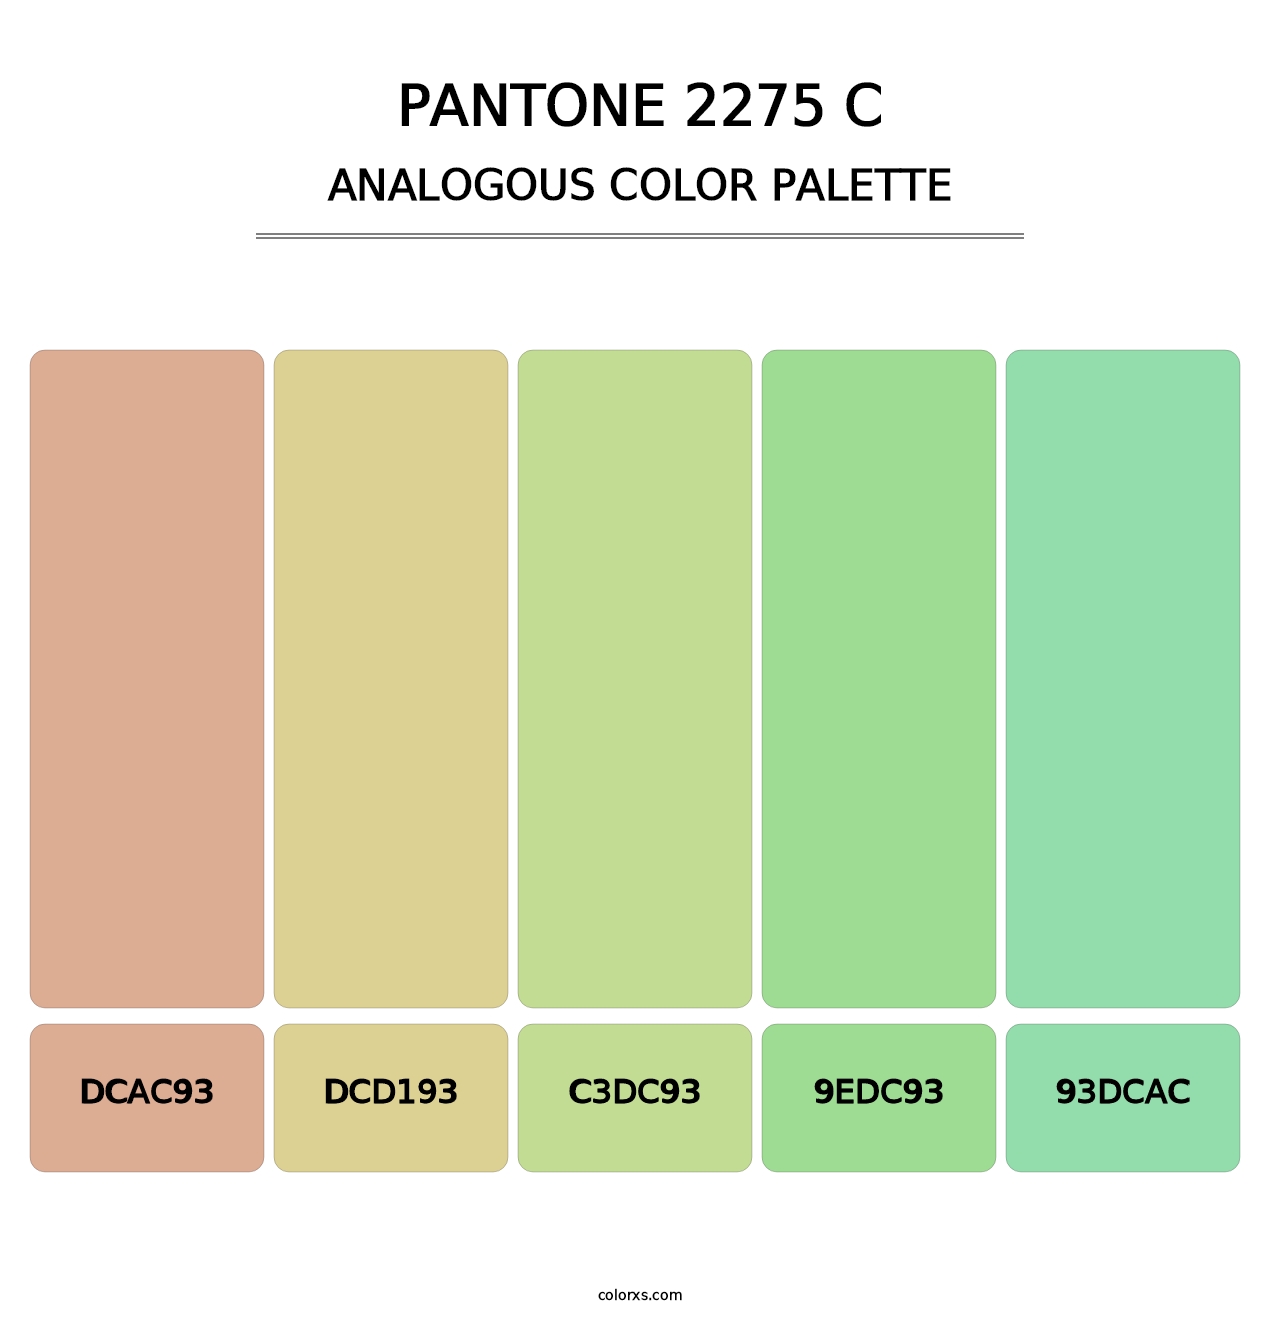 PANTONE 2275 C - Analogous Color Palette